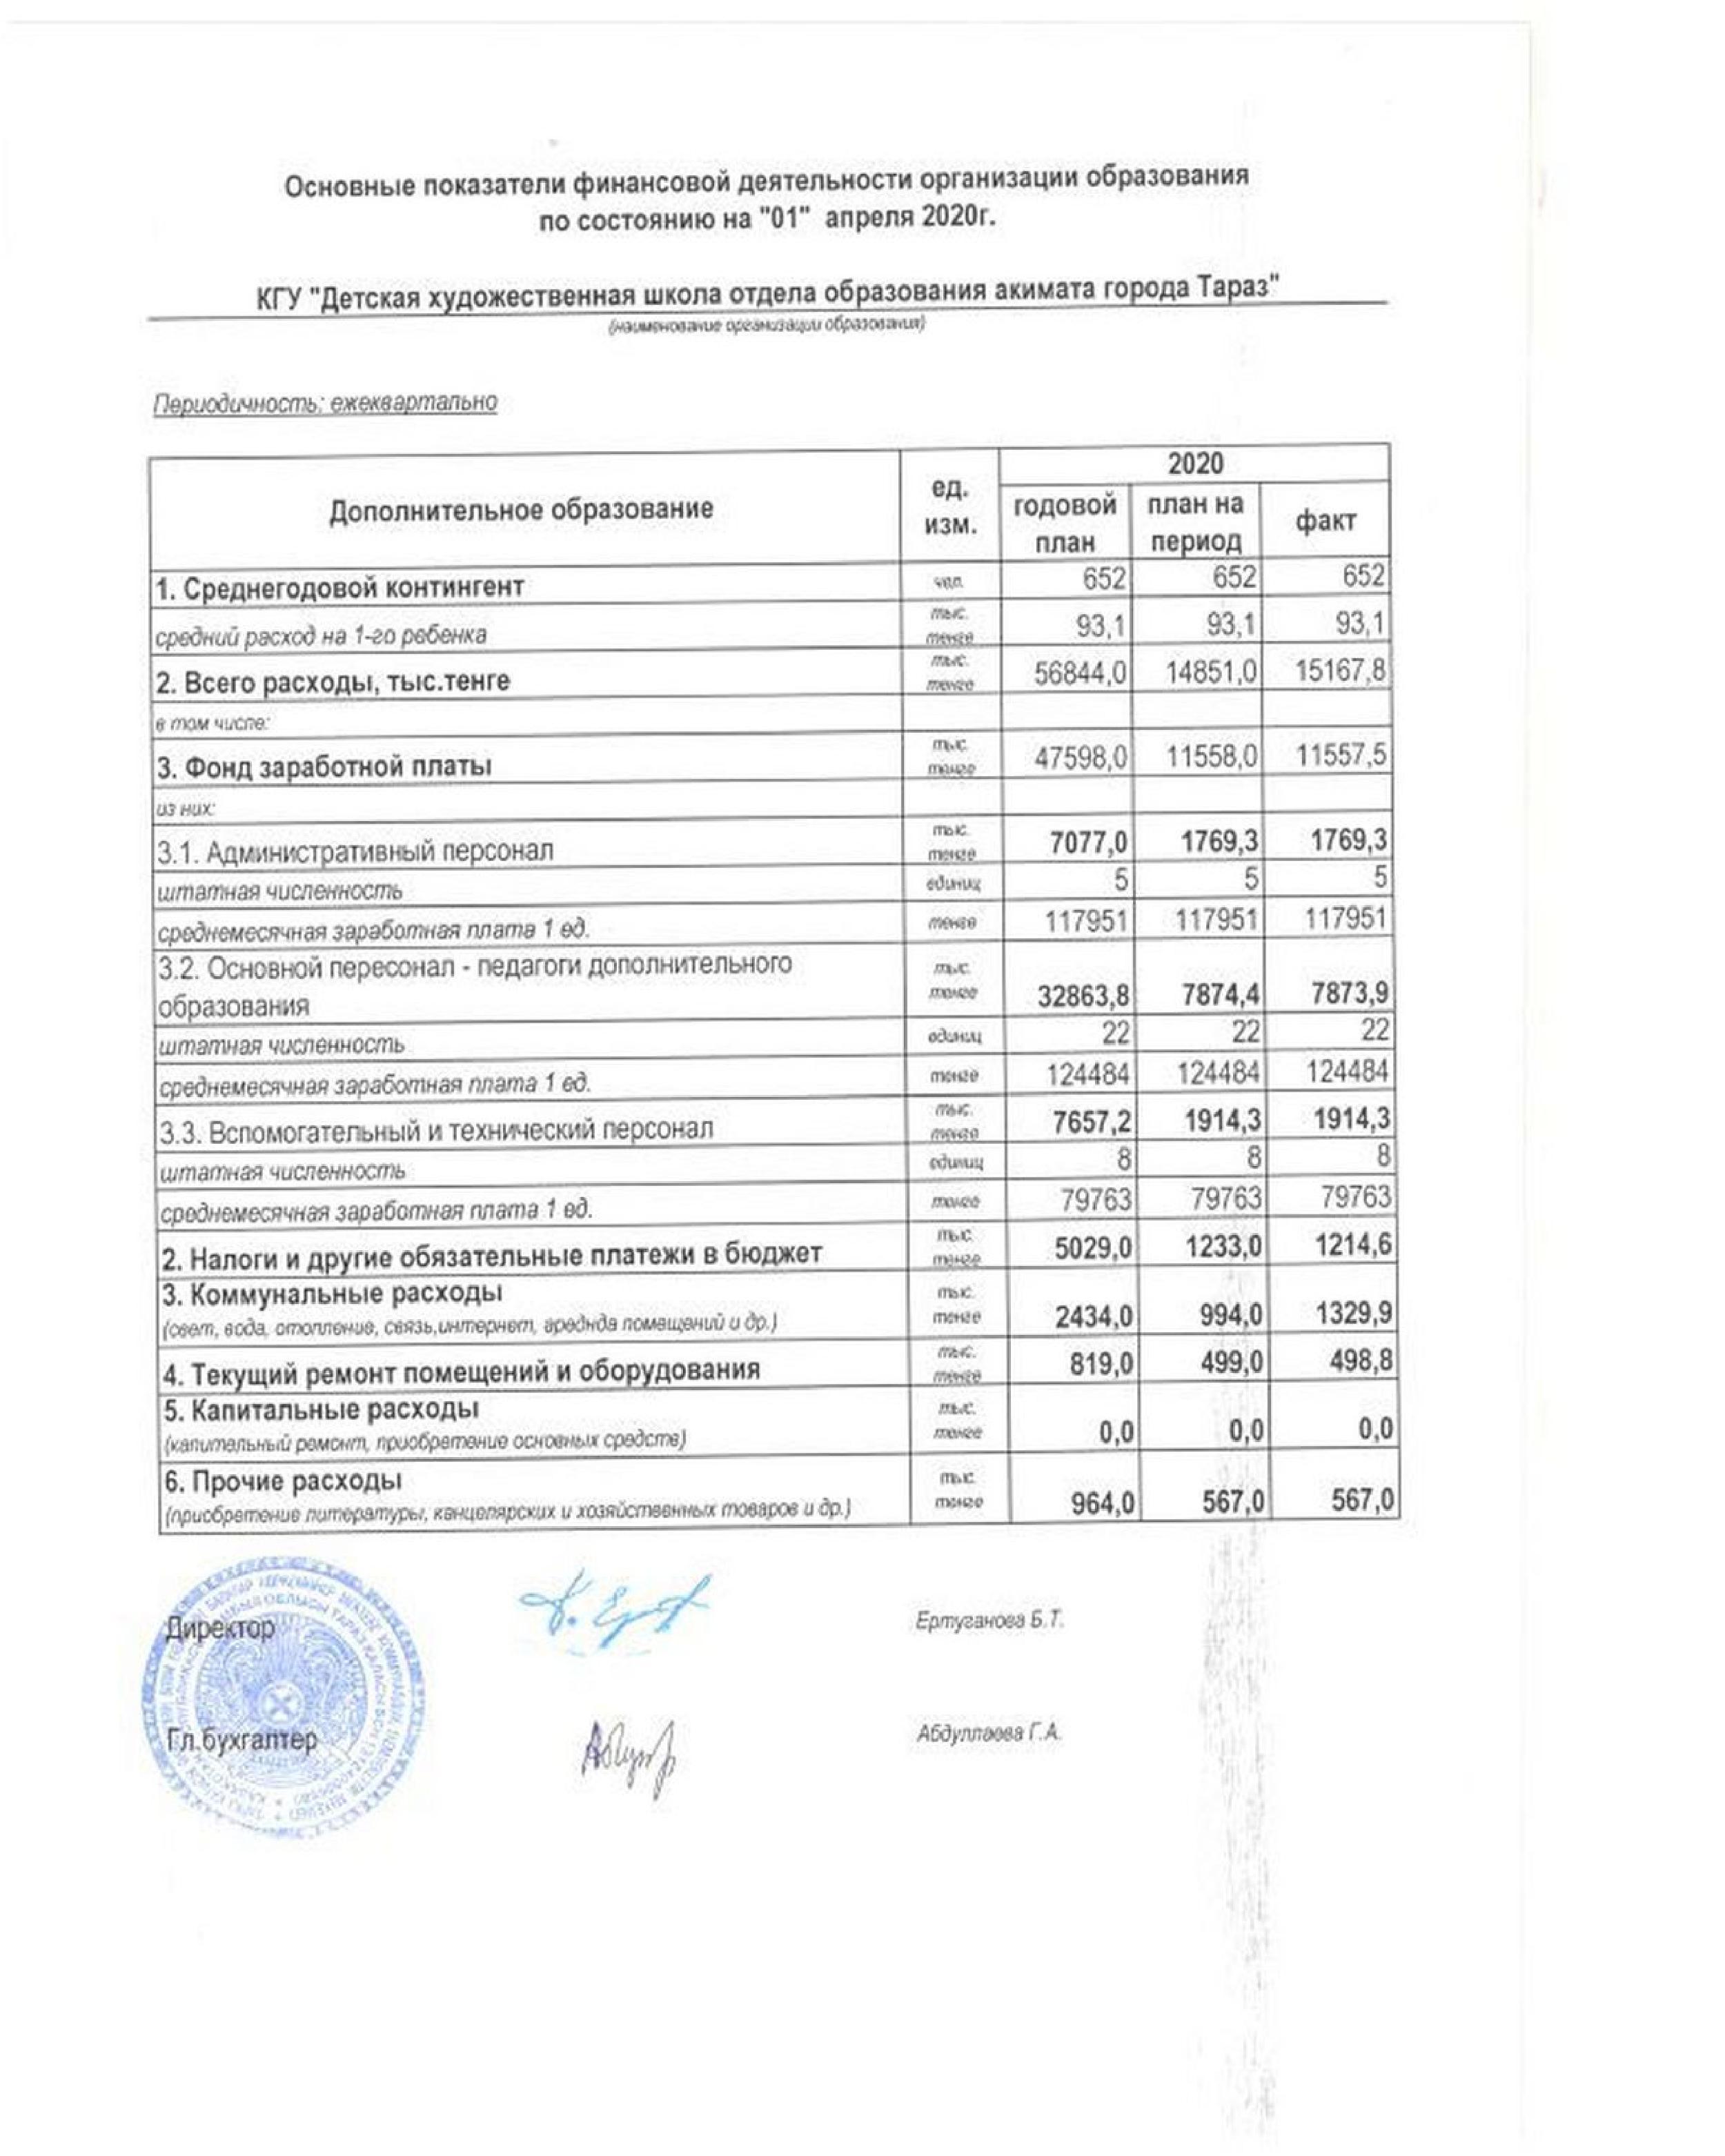 Основные показатели финансовой деятельности на 01.04.2020 г.